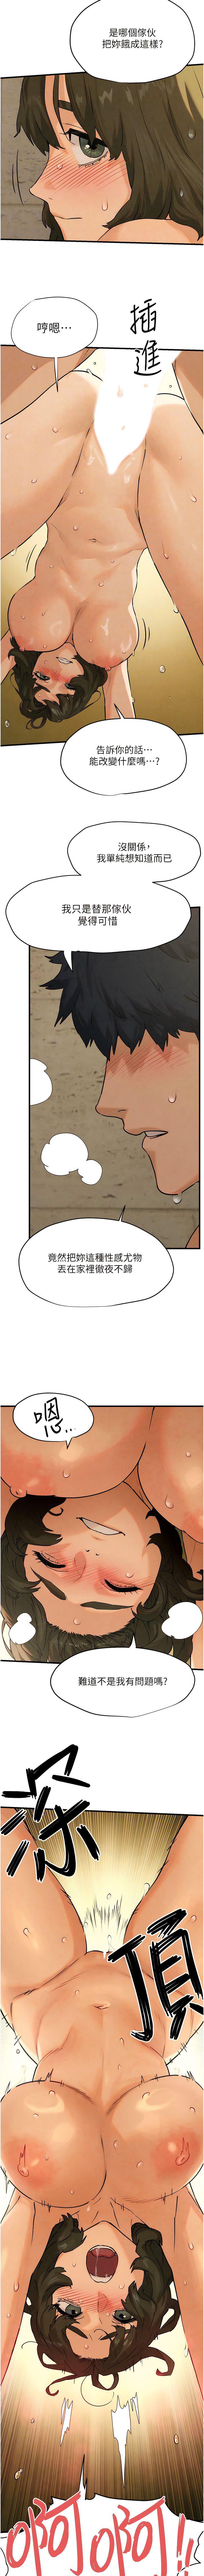 韩国污漫画 欲海交鋒 第6话 寻找性奴的危险顾客 7